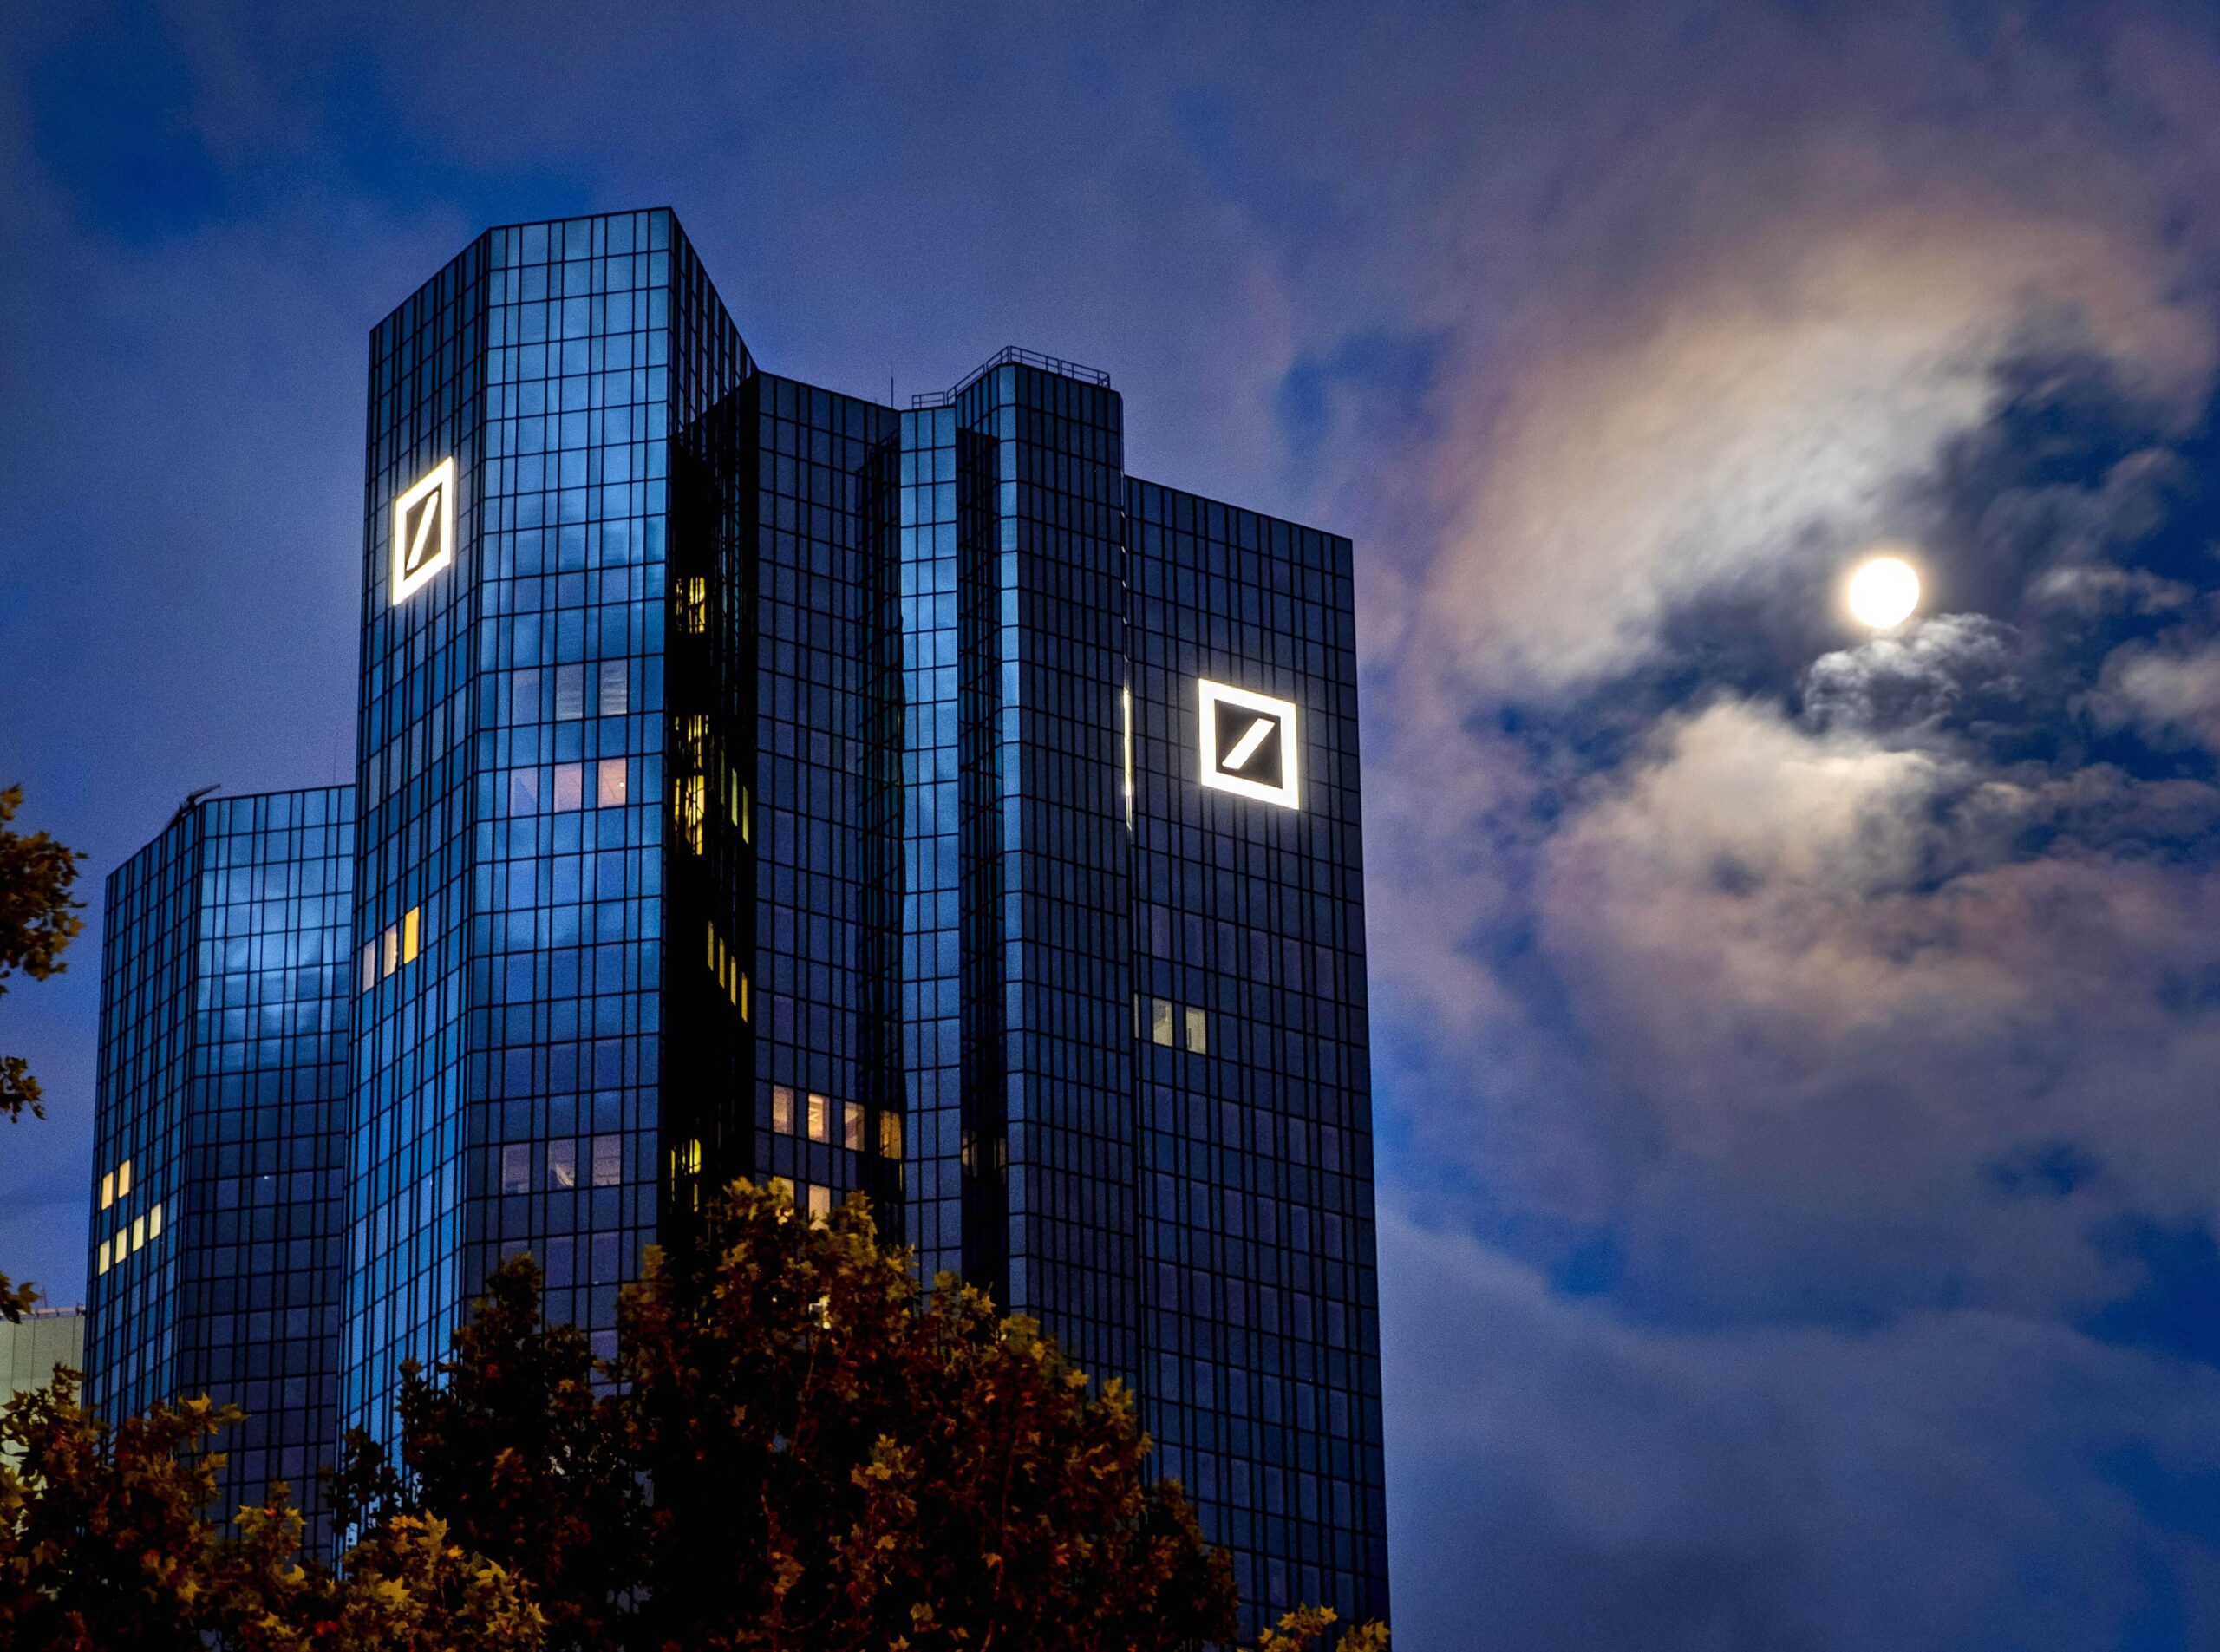 Germany Deutsche Bank